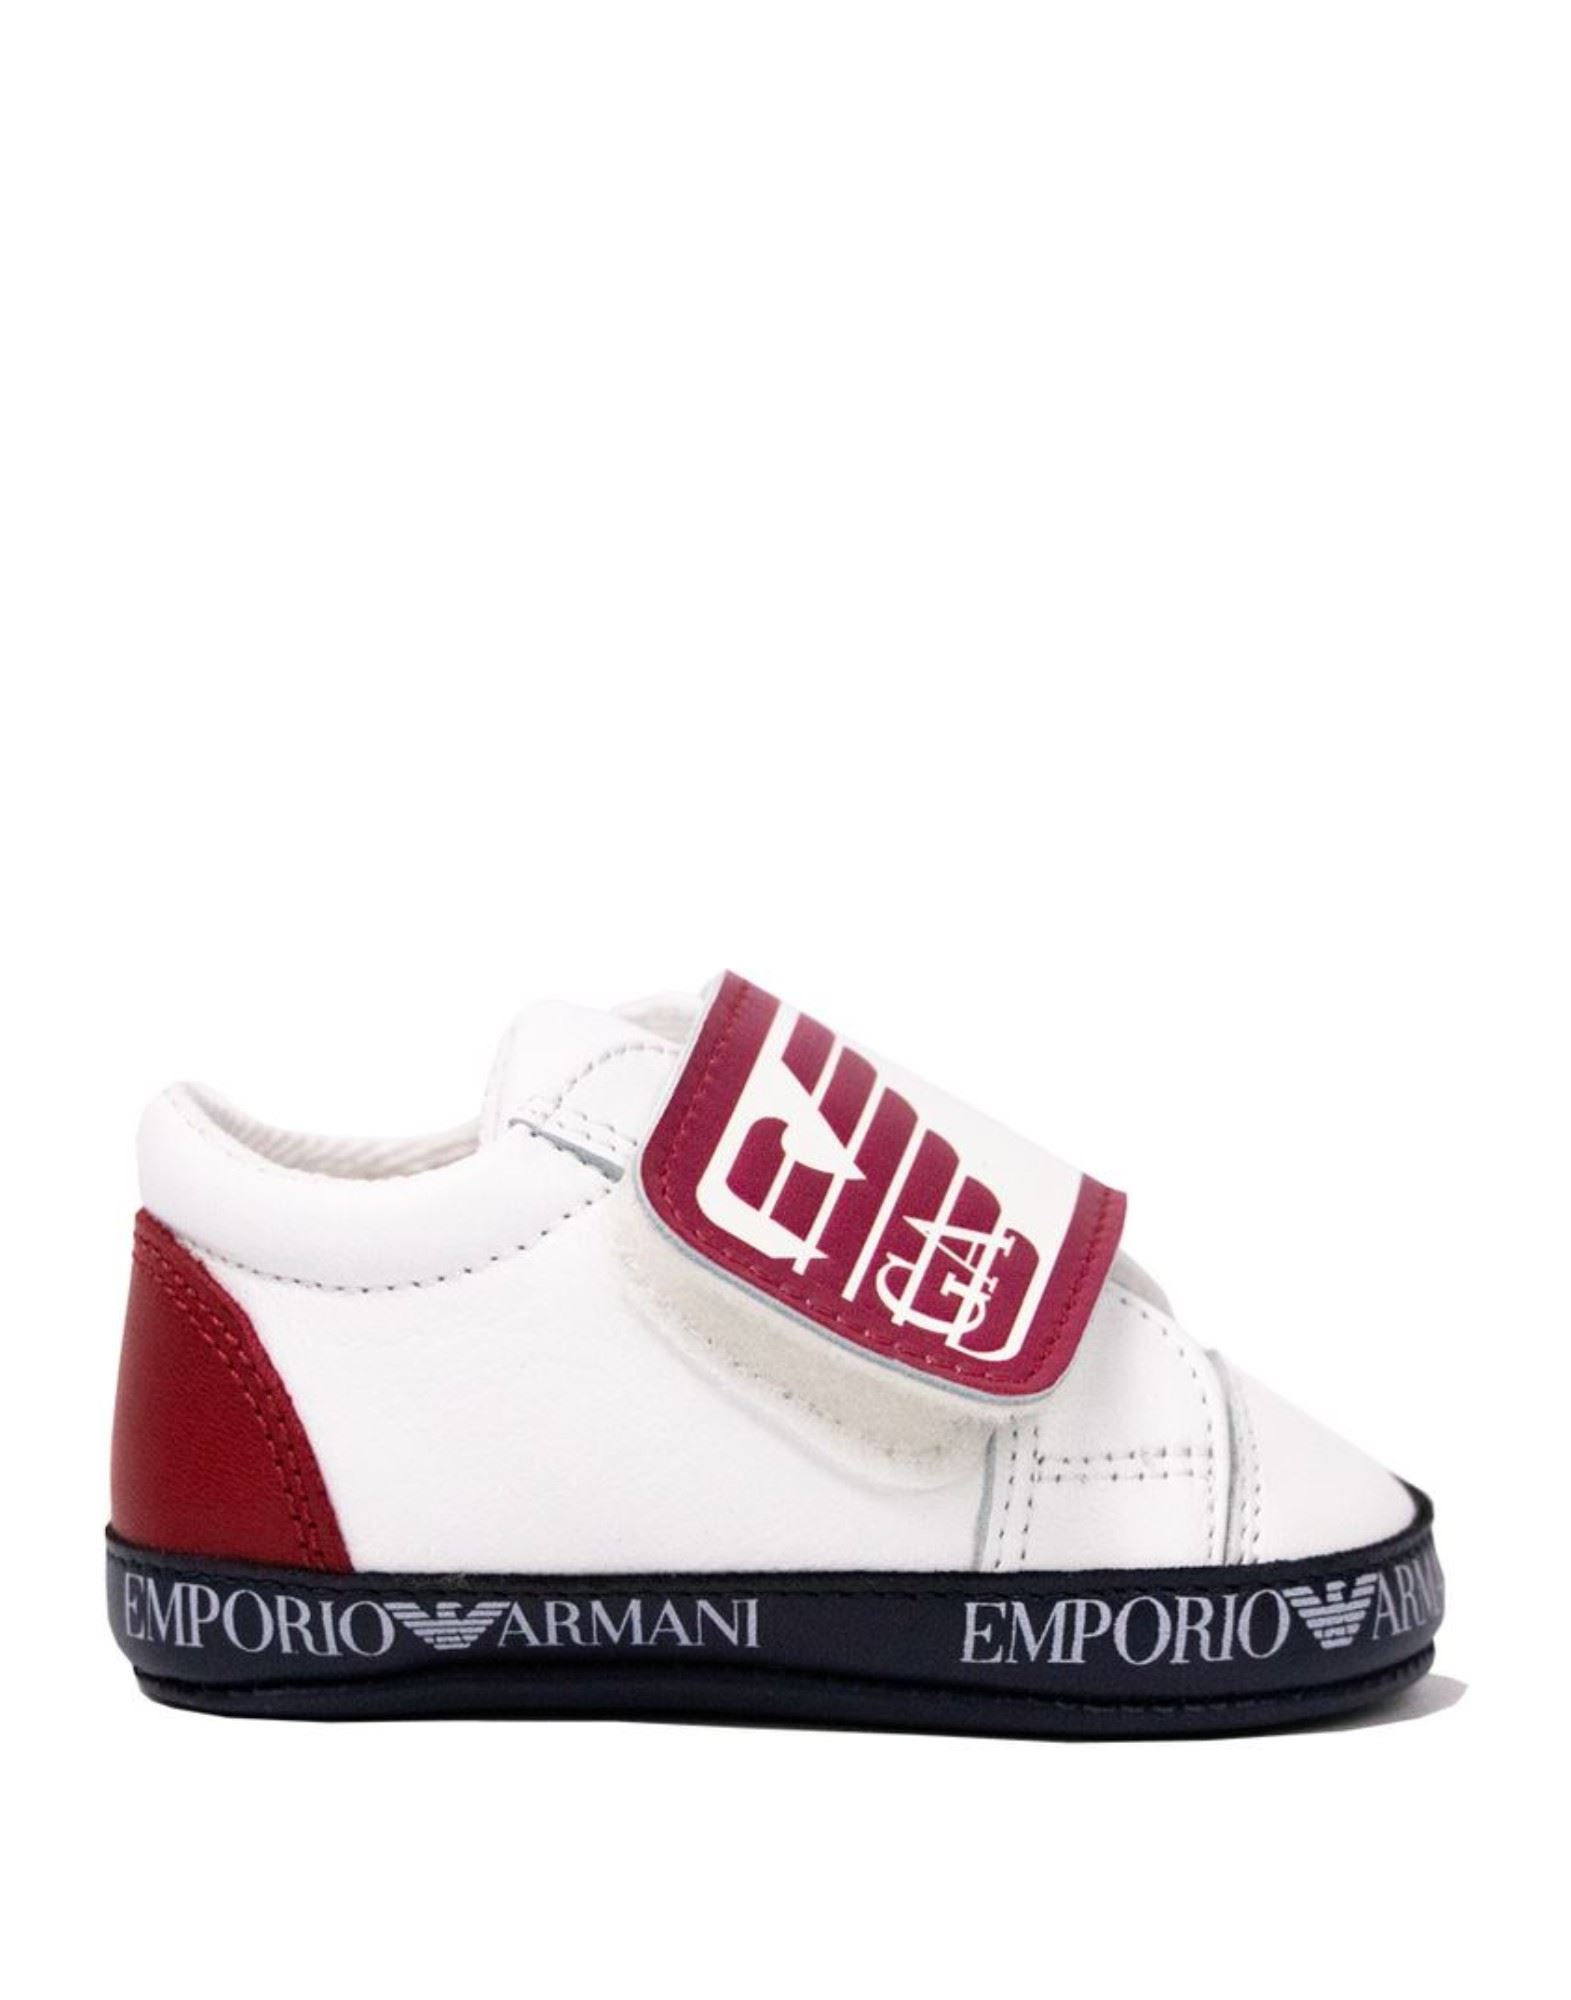 EMPORIO ARMANI Schuhe Für Neugeborene Kinder Weiß von EMPORIO ARMANI